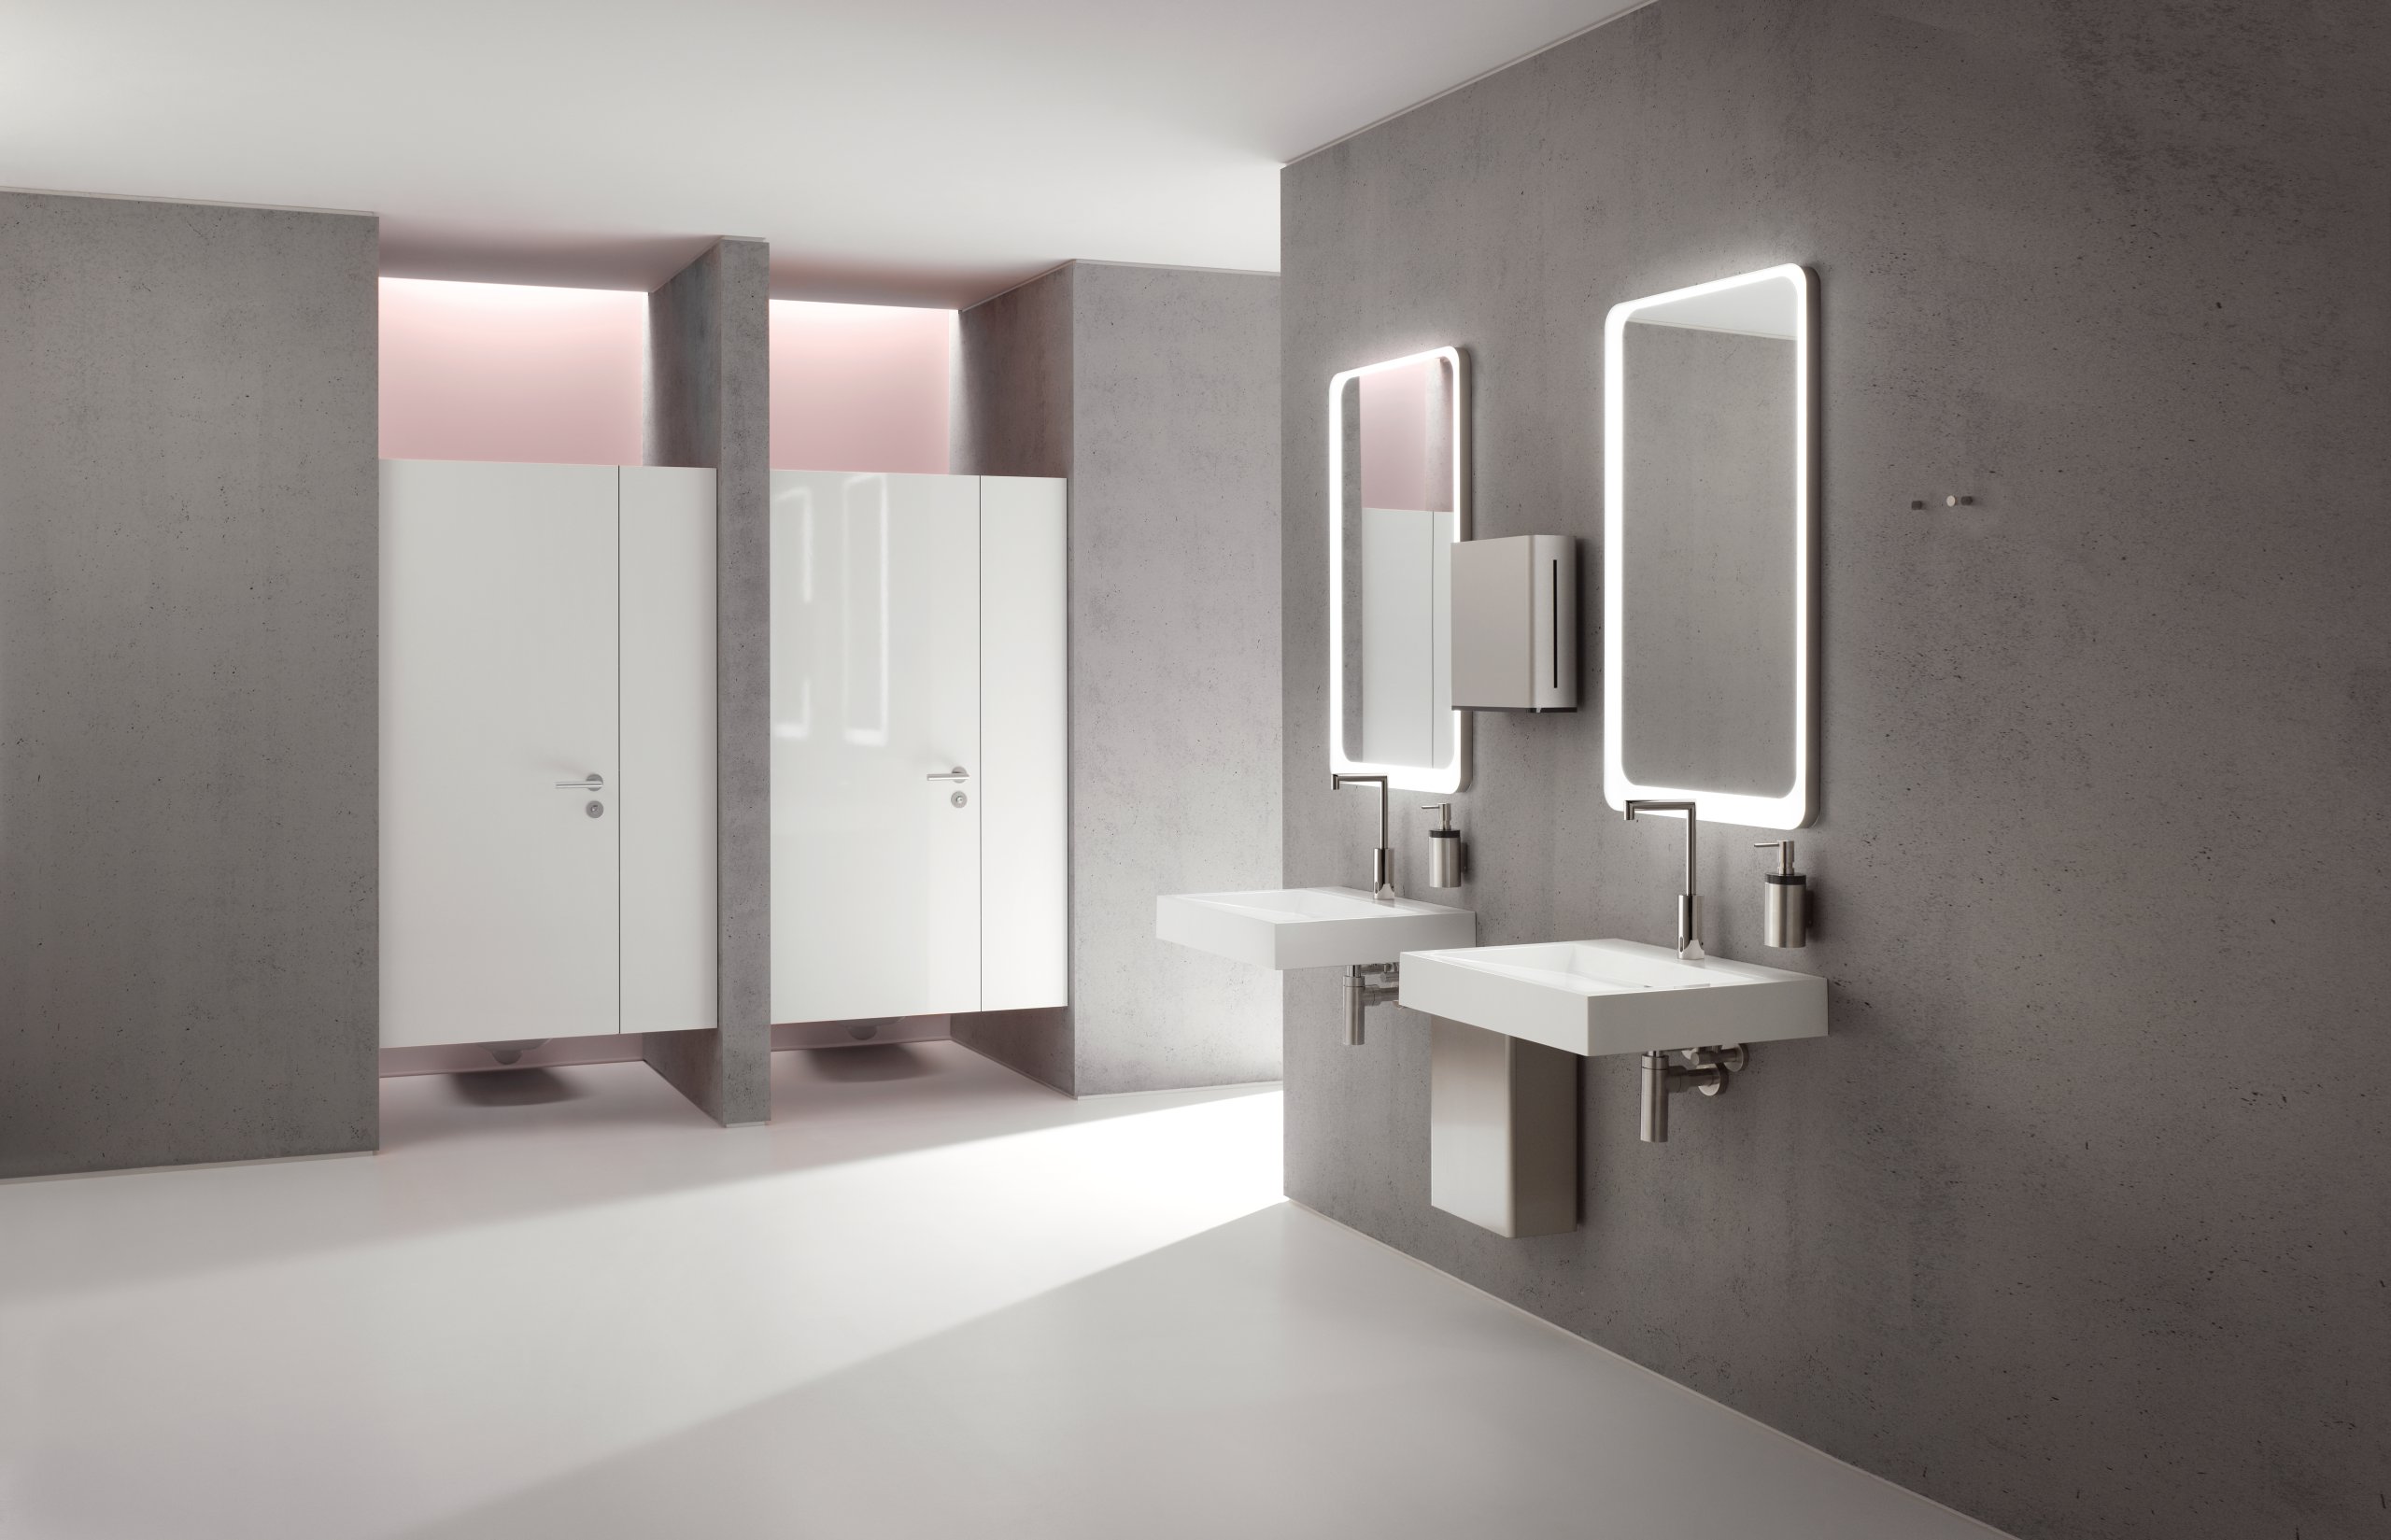 Öffentlicher WC-Bereich mit Waschbecken und Spiegel ausgestattet mit Abfallbehälter, Seifen- und Papierhandtuchspender